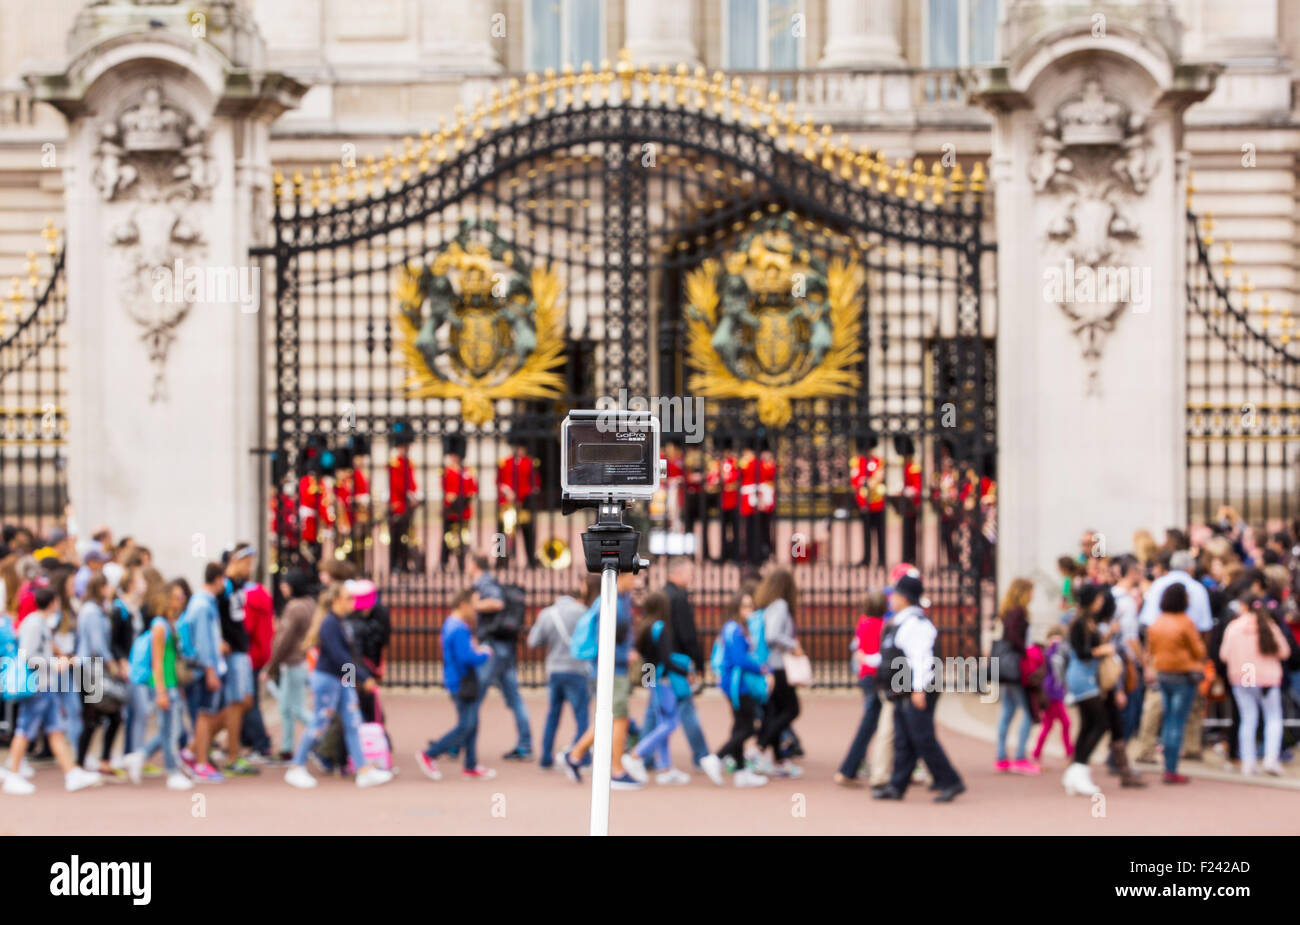 Touristen-Warteschlange, beobachten Sie die Wachablösung am Buckingham Palace, London, UK, mit einer Go pro Kamera auf einem Selfie Stick im Vordergrund. Stockfoto